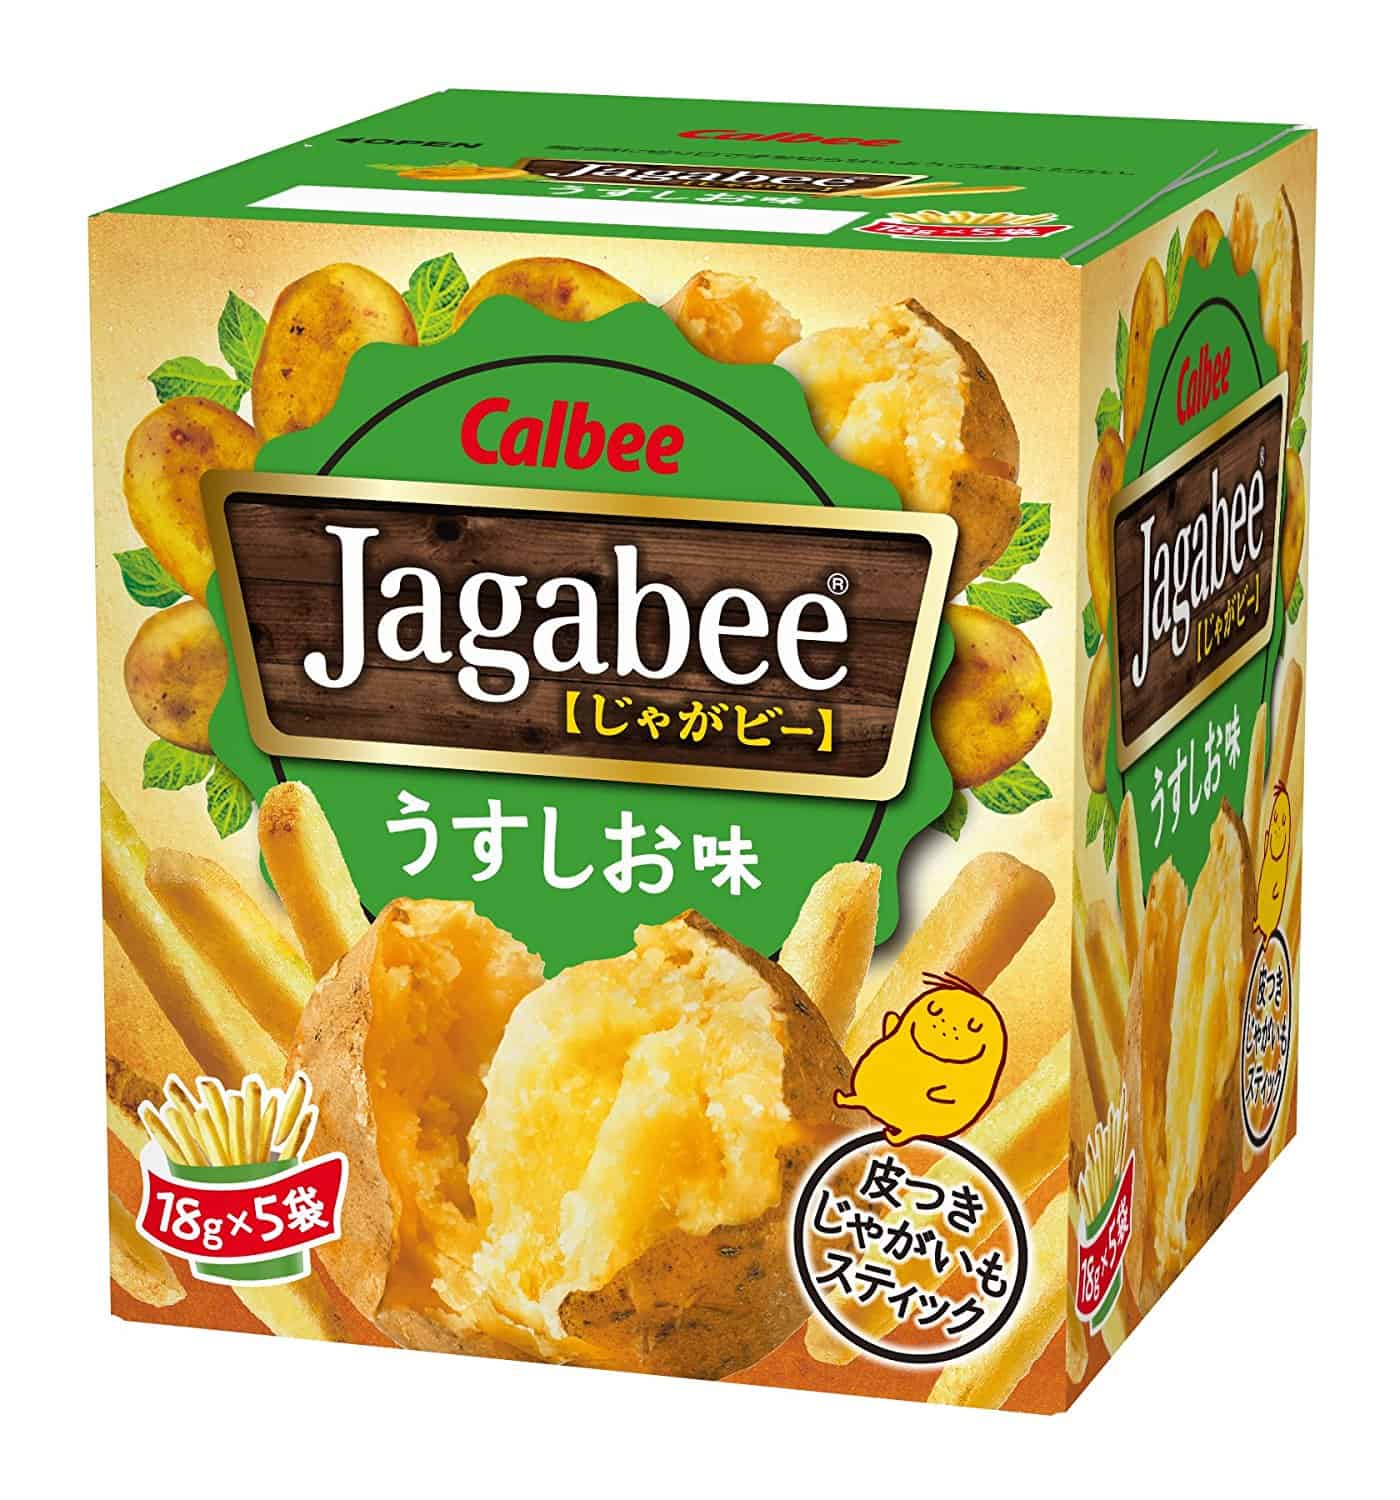 Jagabee potatis mellanmål från Japan